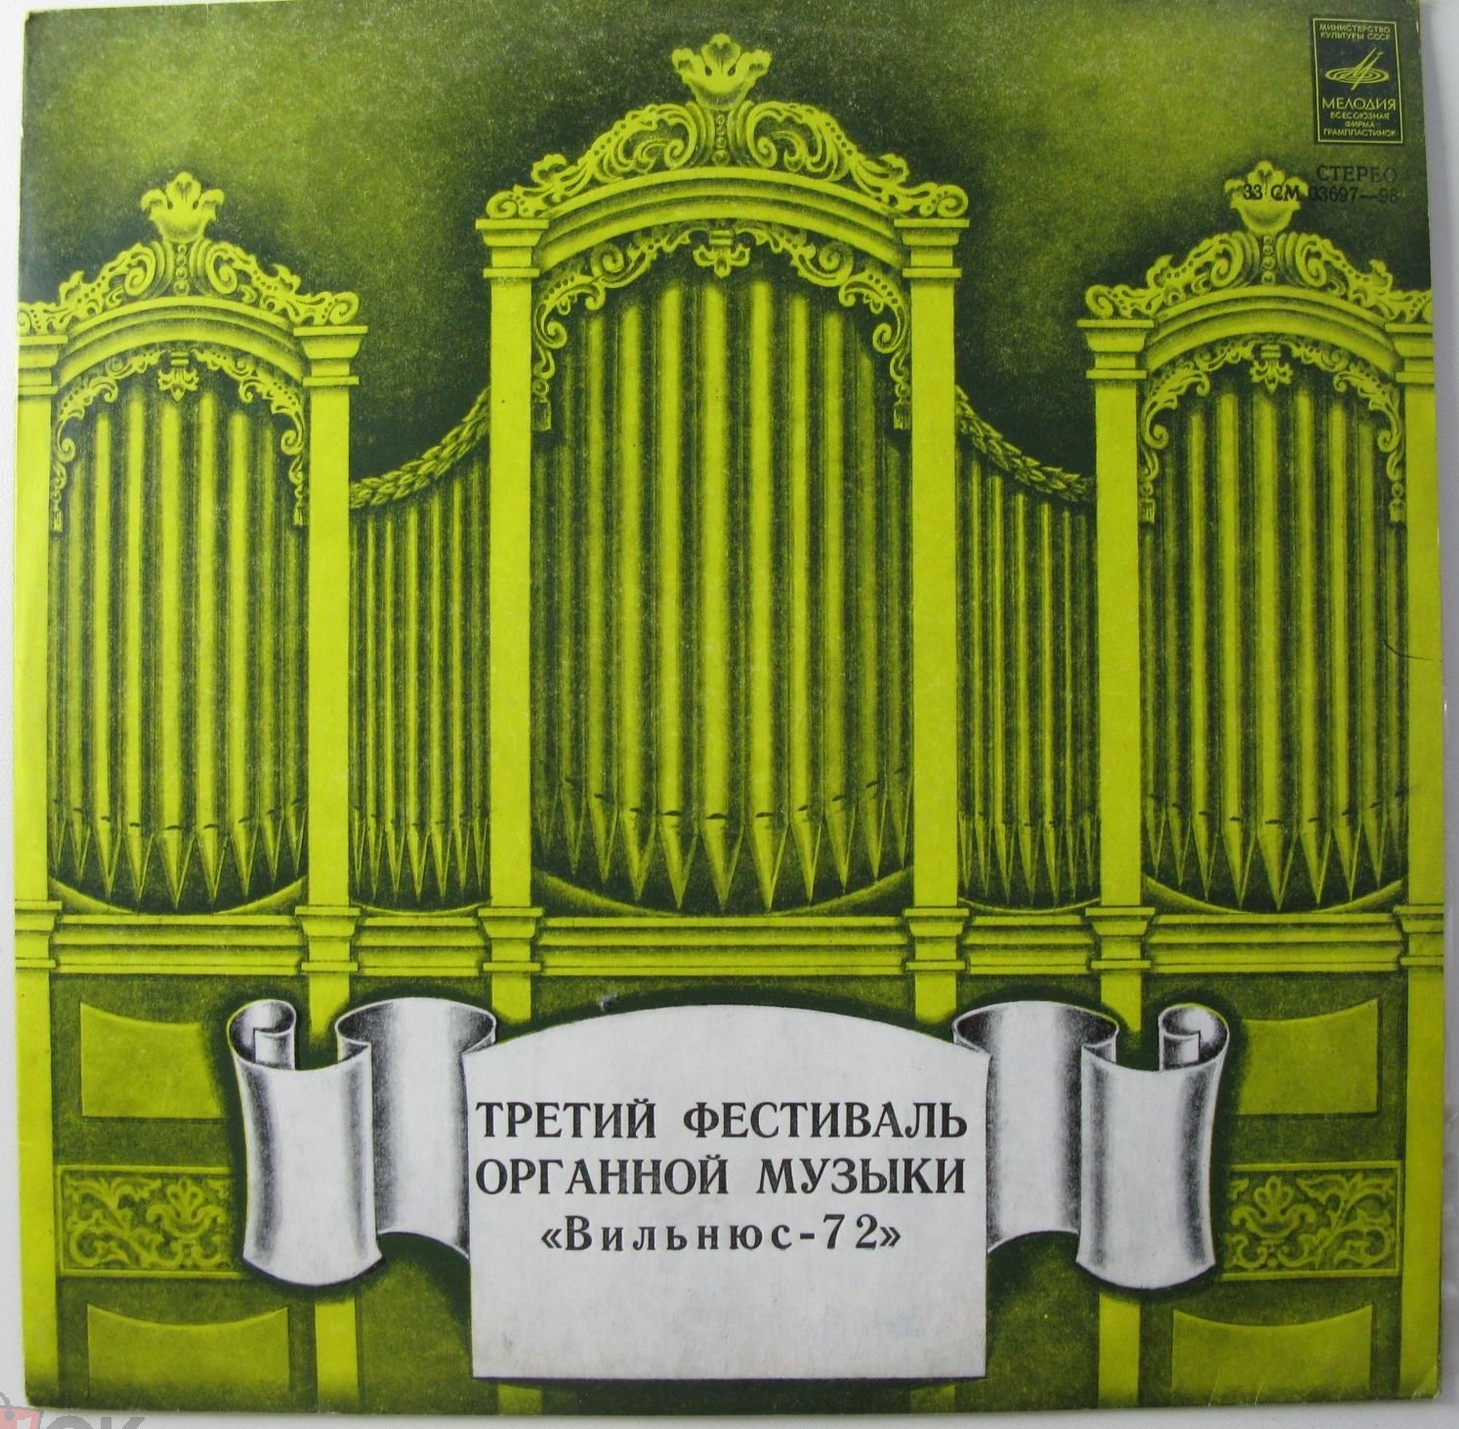 Третий фестиваль органной музыки "Вильнюс-72"